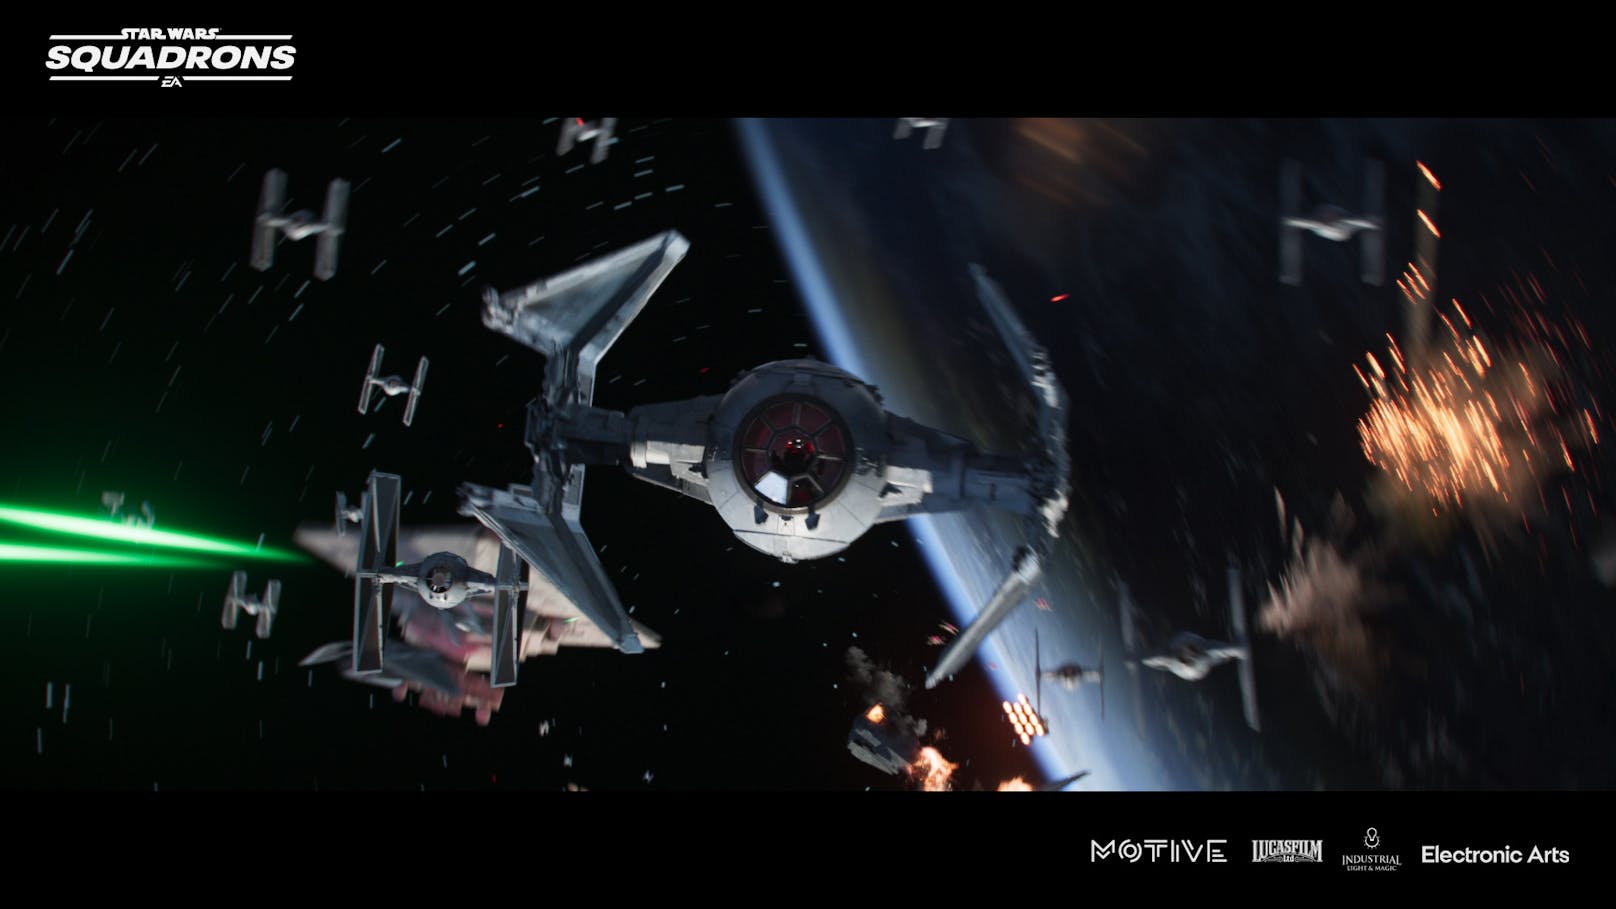 Die Handlung der Story spielt nach den Ereignissen von "Star Wars Episode 6: Die Rückkehr der Jedi-Ritter". Der zweite Todesstern wurde zerstört, Darth Vader und der Imperator sind tot. Die Neue Republik muss sich aber nach wie vor mit den Resten des Imperiums herumschlagen.